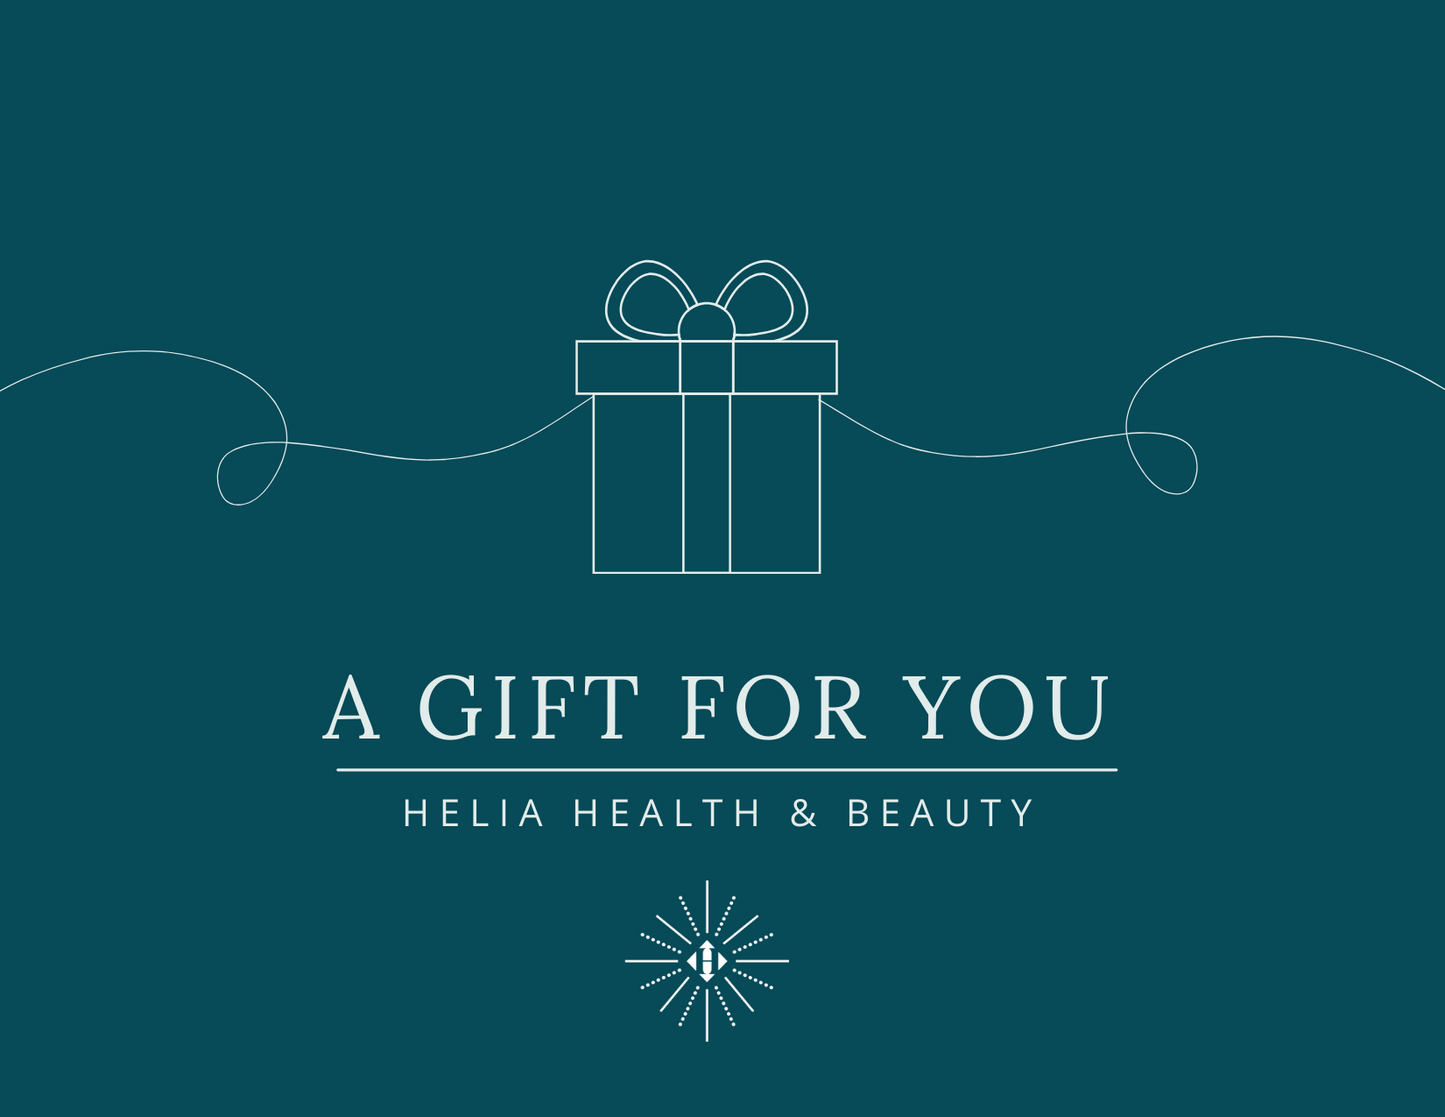 Helia Health & Beauty Digital Gift Card